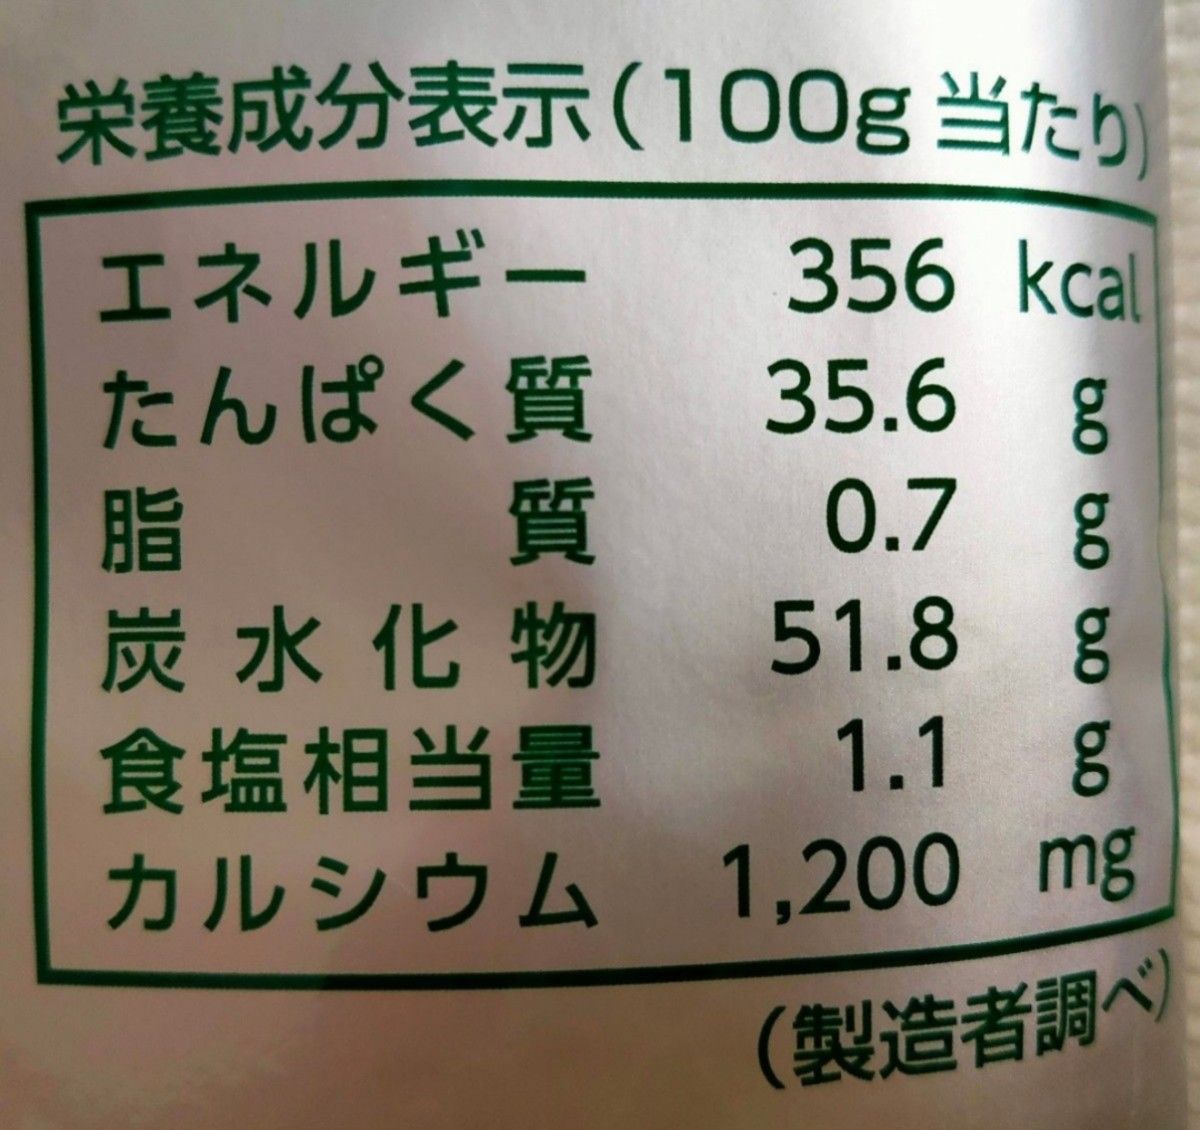 スキムミルク  脱脂粉乳  よつ葉  よつば  1kg